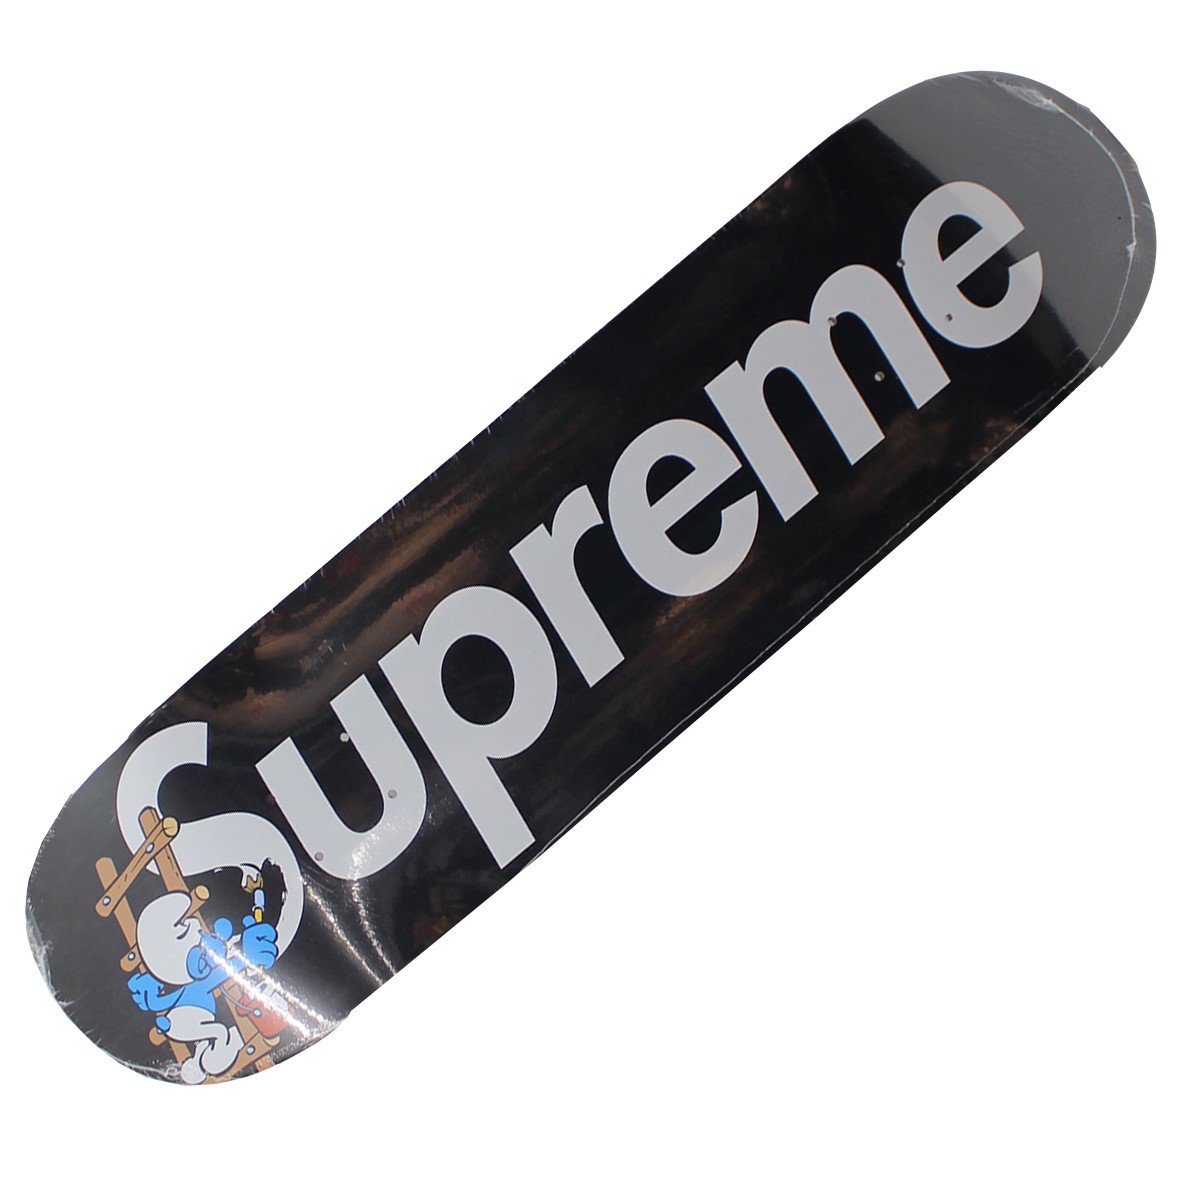 同梱不可】 supreme smurfs skateboard スマーフスケートボードデッキ 